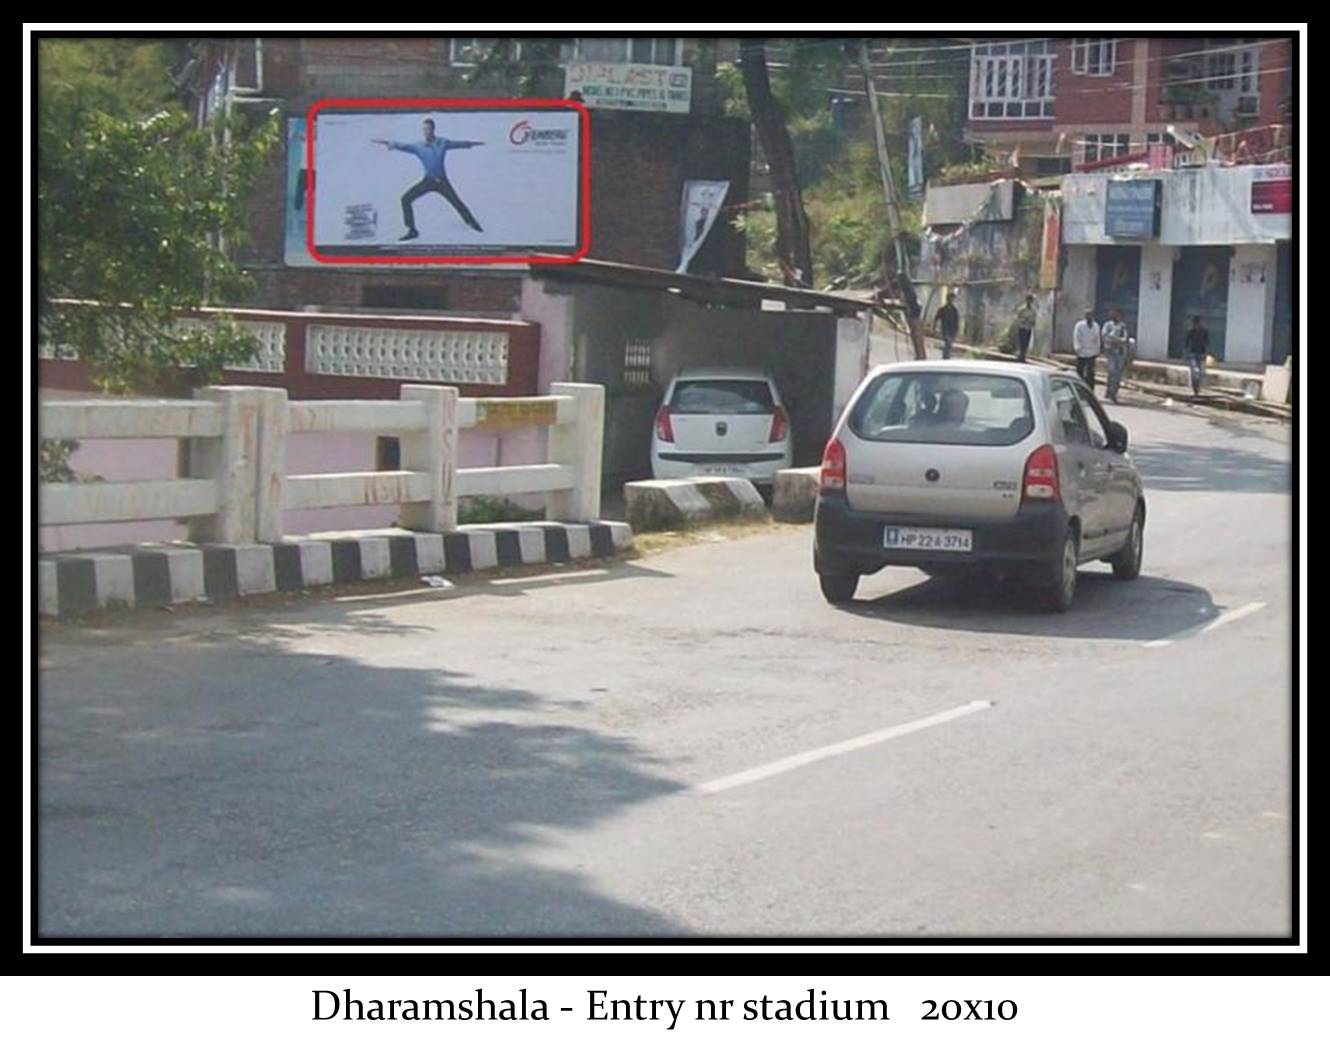 Entry nr stadium, Dharamshala